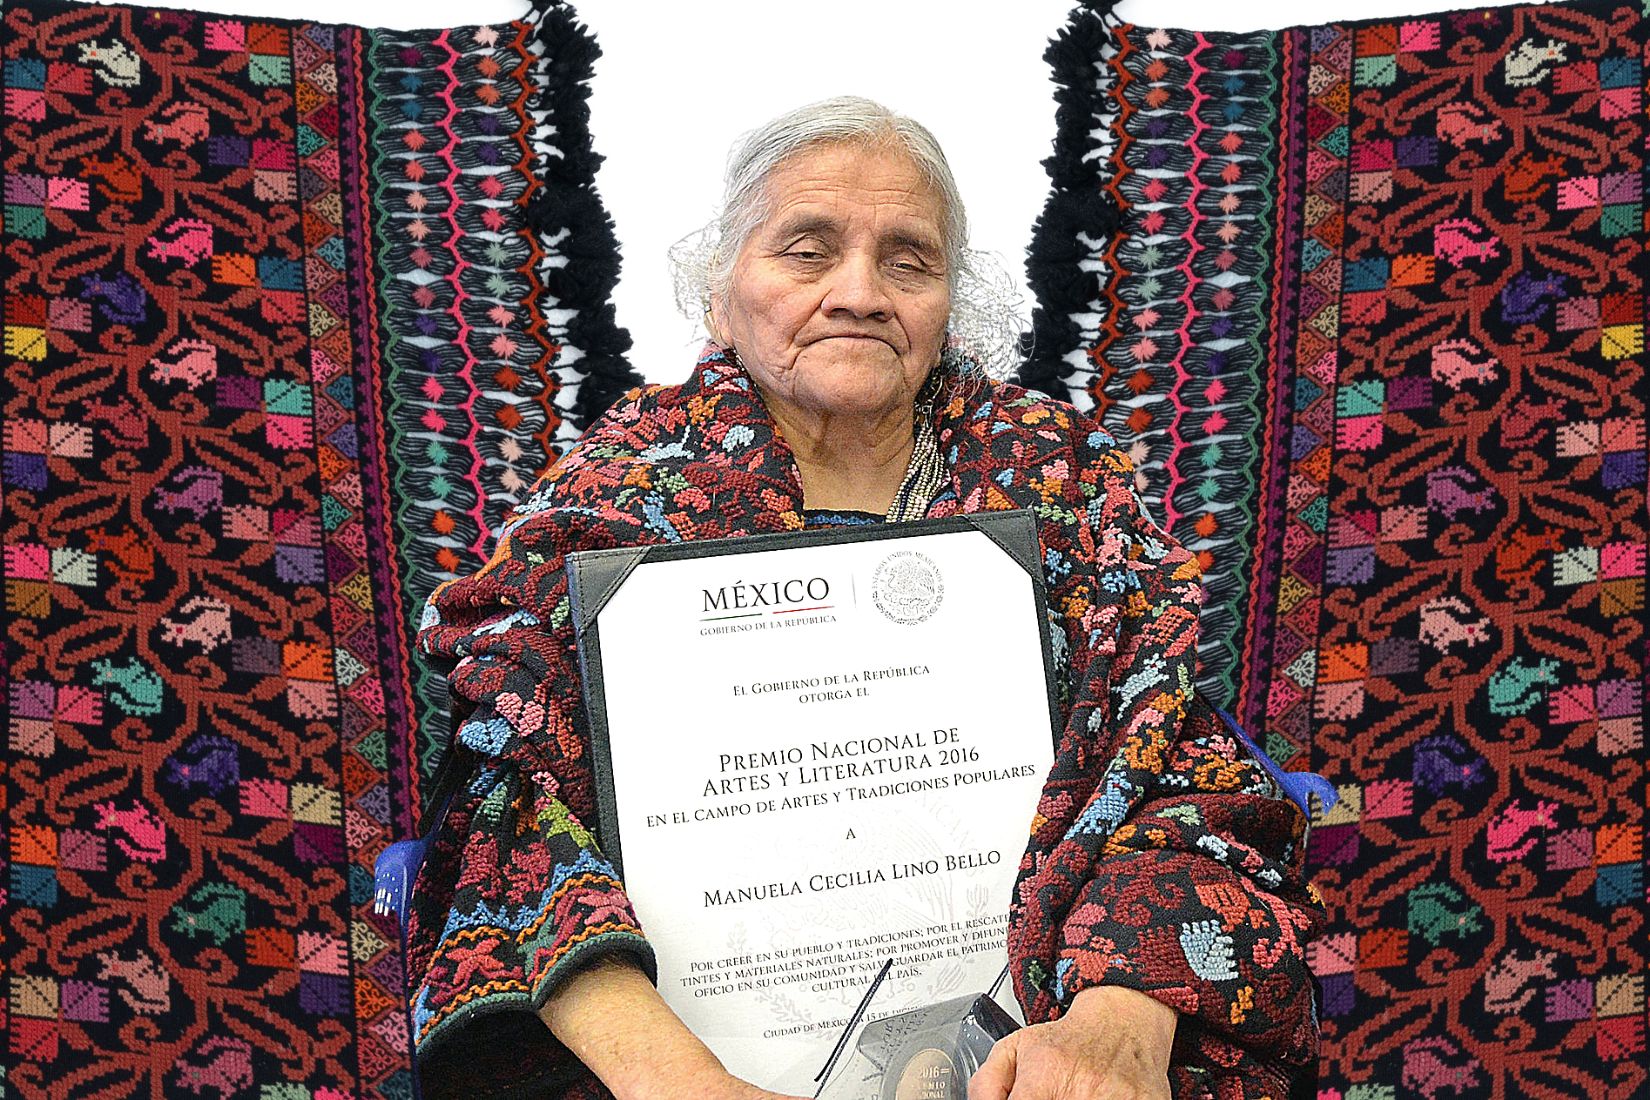 Manuela Cecilia Lino Bello (+) artesana de textil de Hueyapan, Puebla.